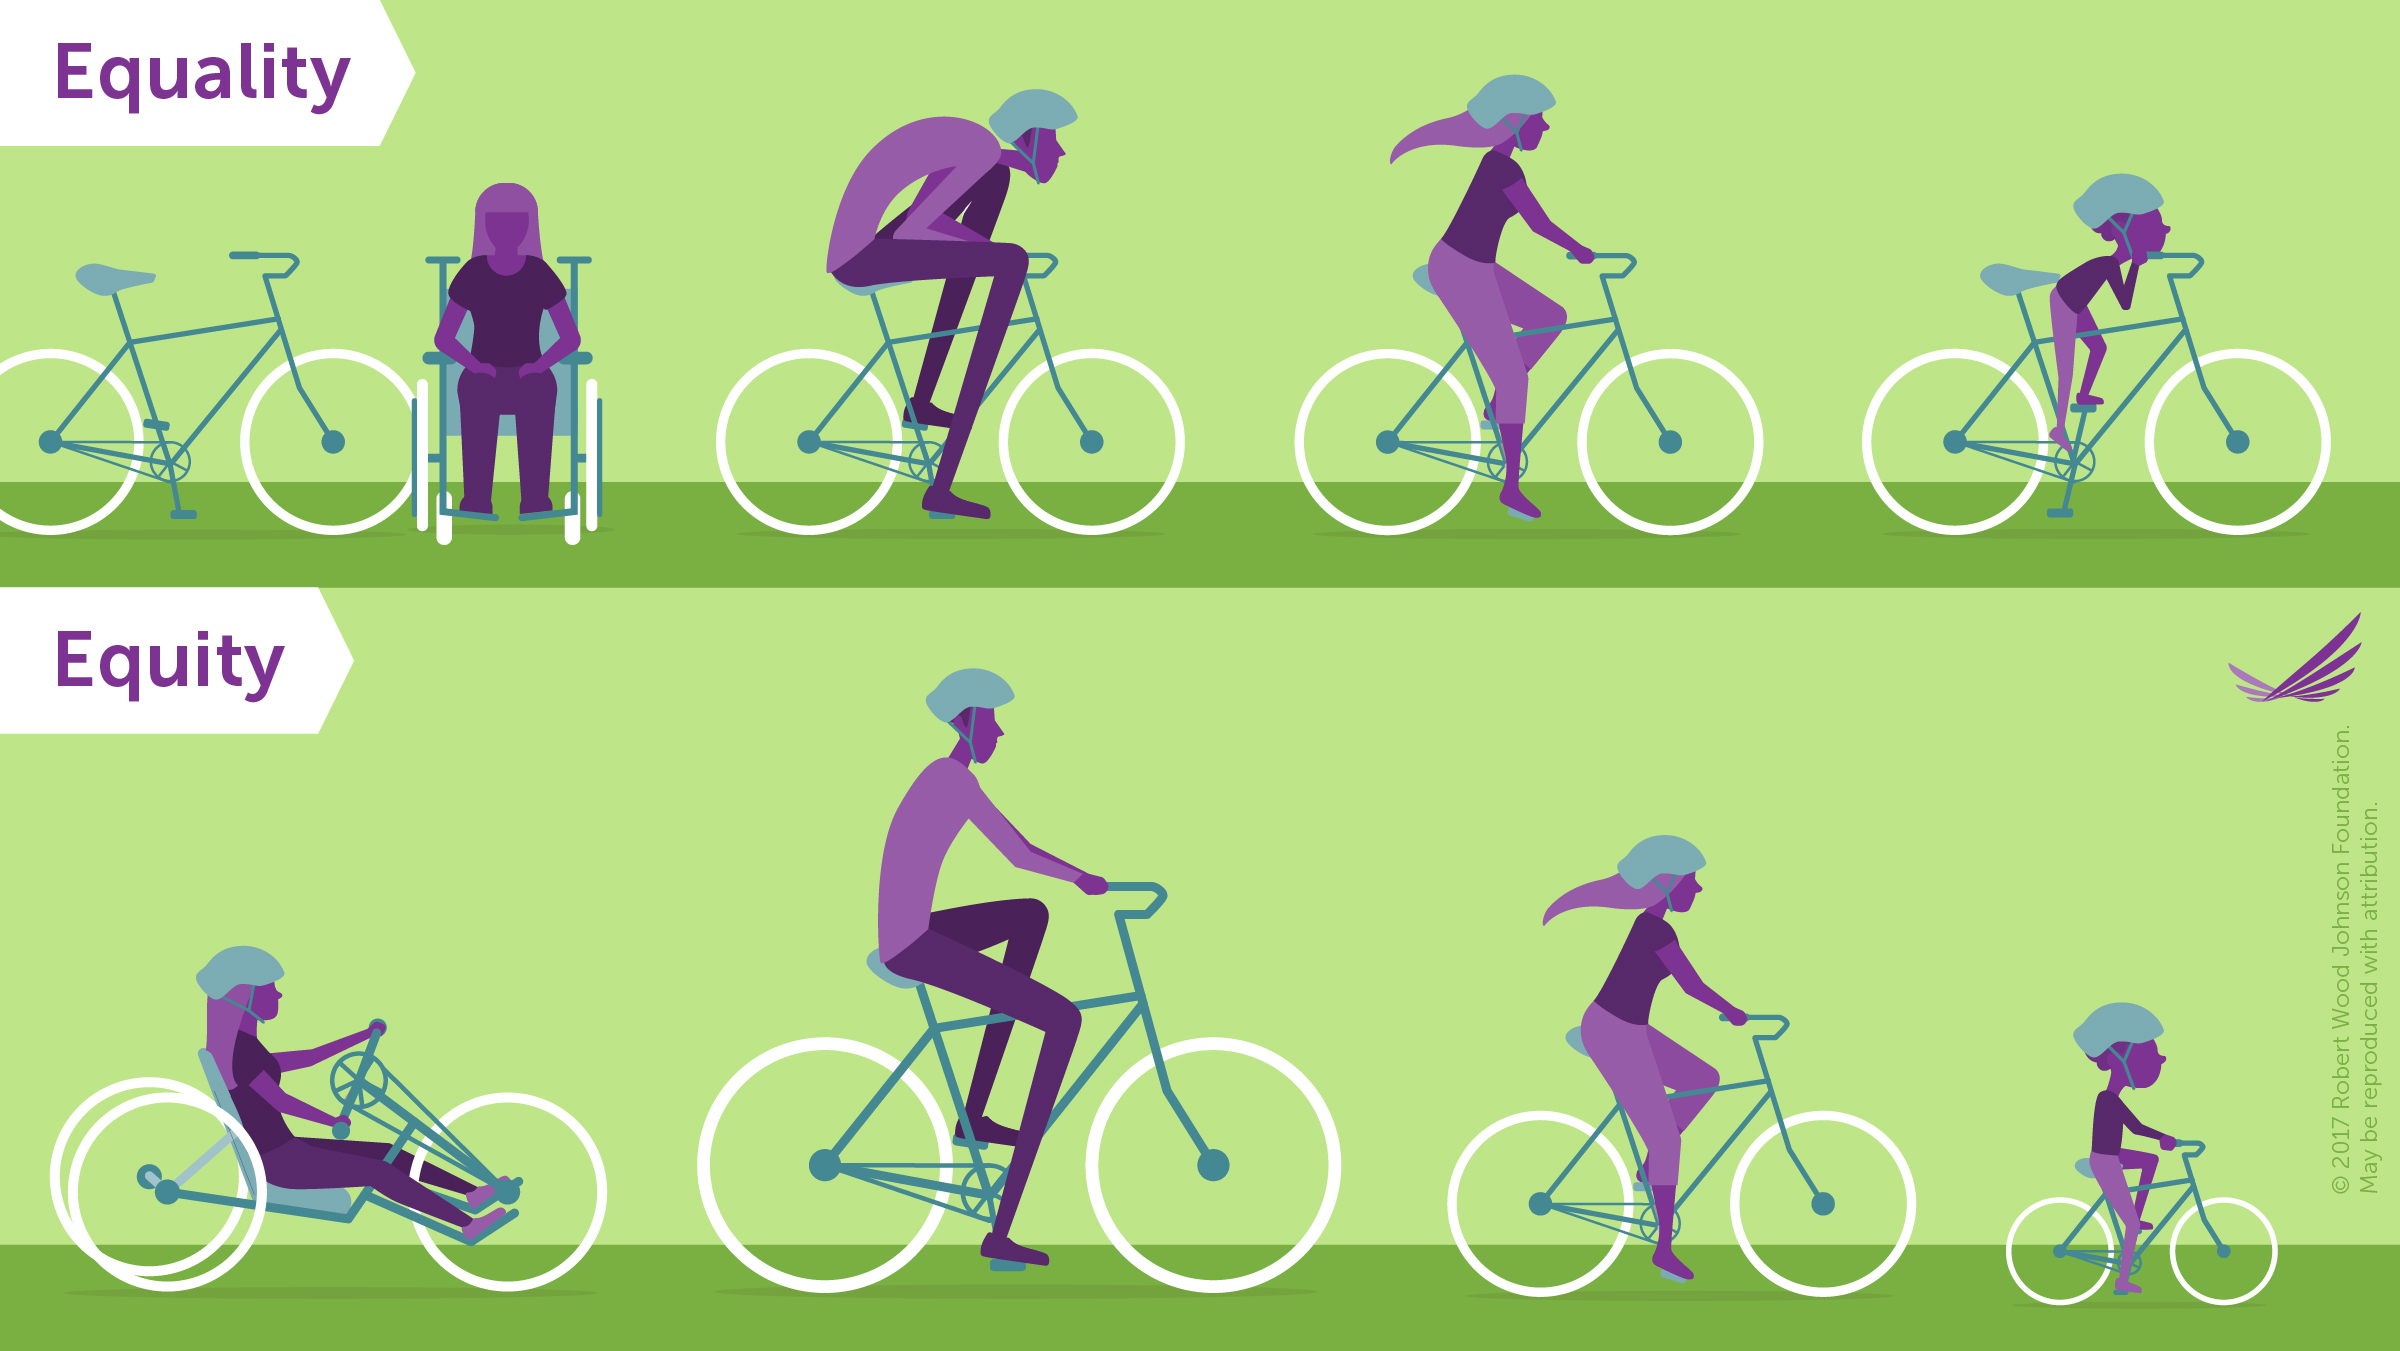 Imagen de bicicletas que muestran la diferencia entre equidad e igualdad